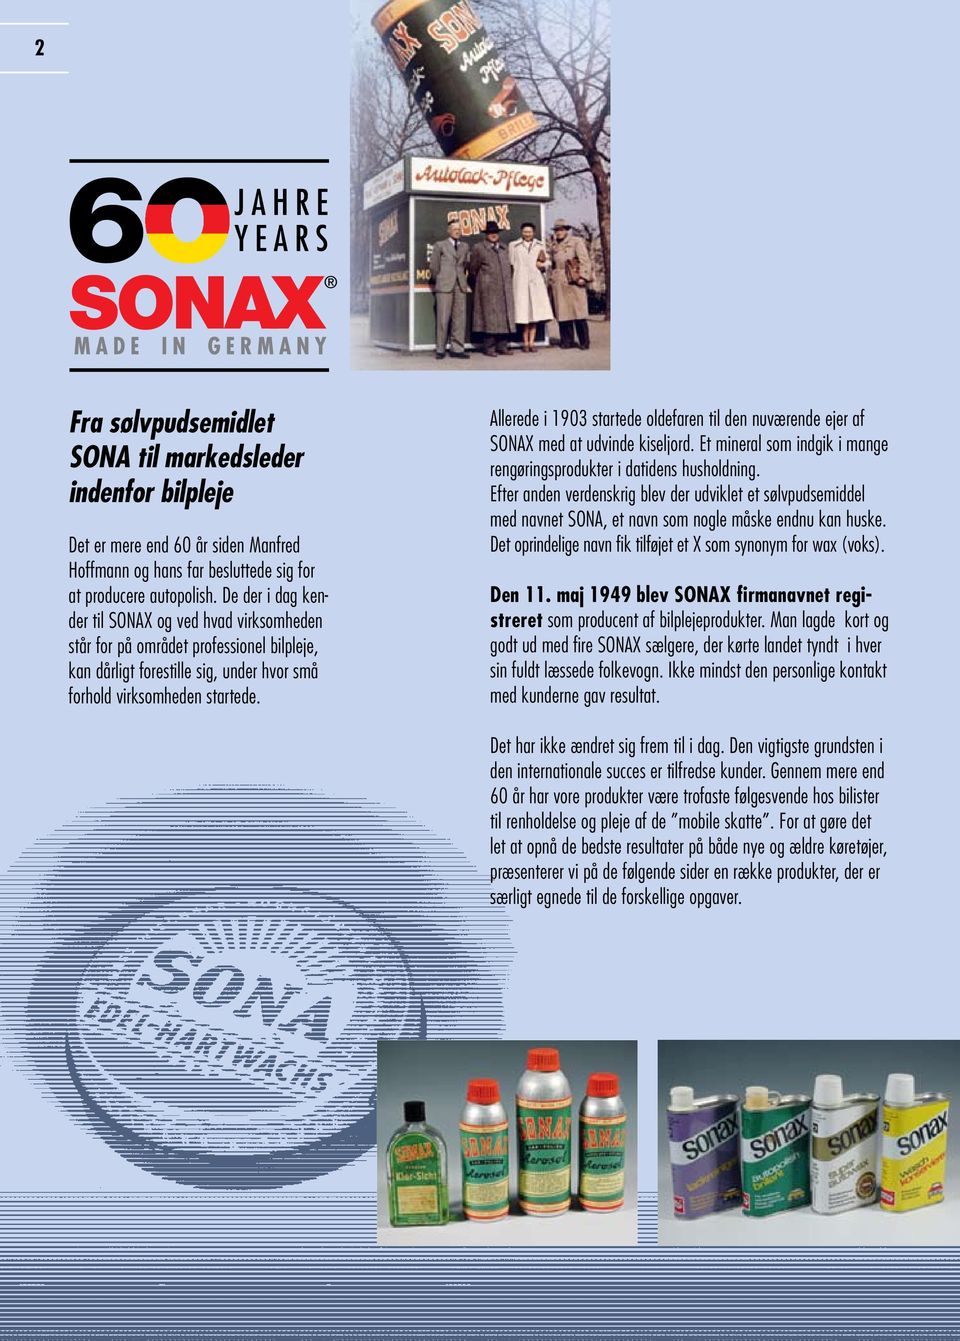 Allerede i 1903 startede oldefaren til den nuværende ejer af SONAX med at udvinde kiseljord. Et mineral som indgik i mange rengøringsprodukter i datidens husholdning.